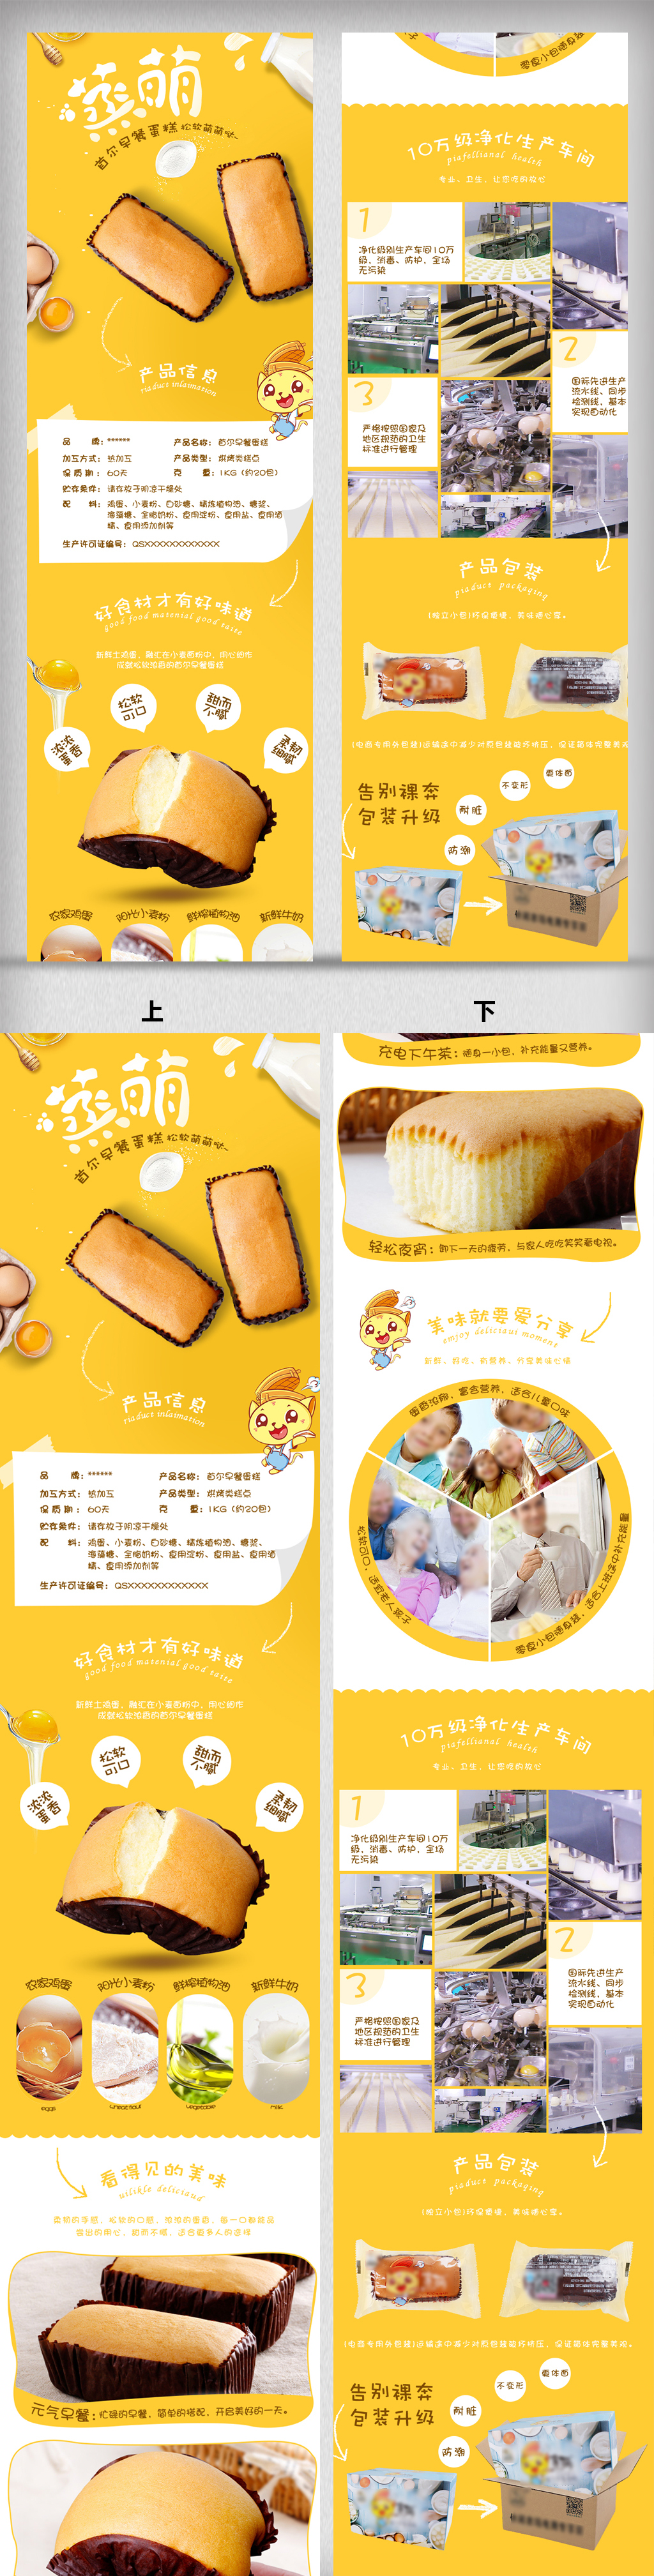 淘宝天猫食品面包蛋糕零食详情页图片